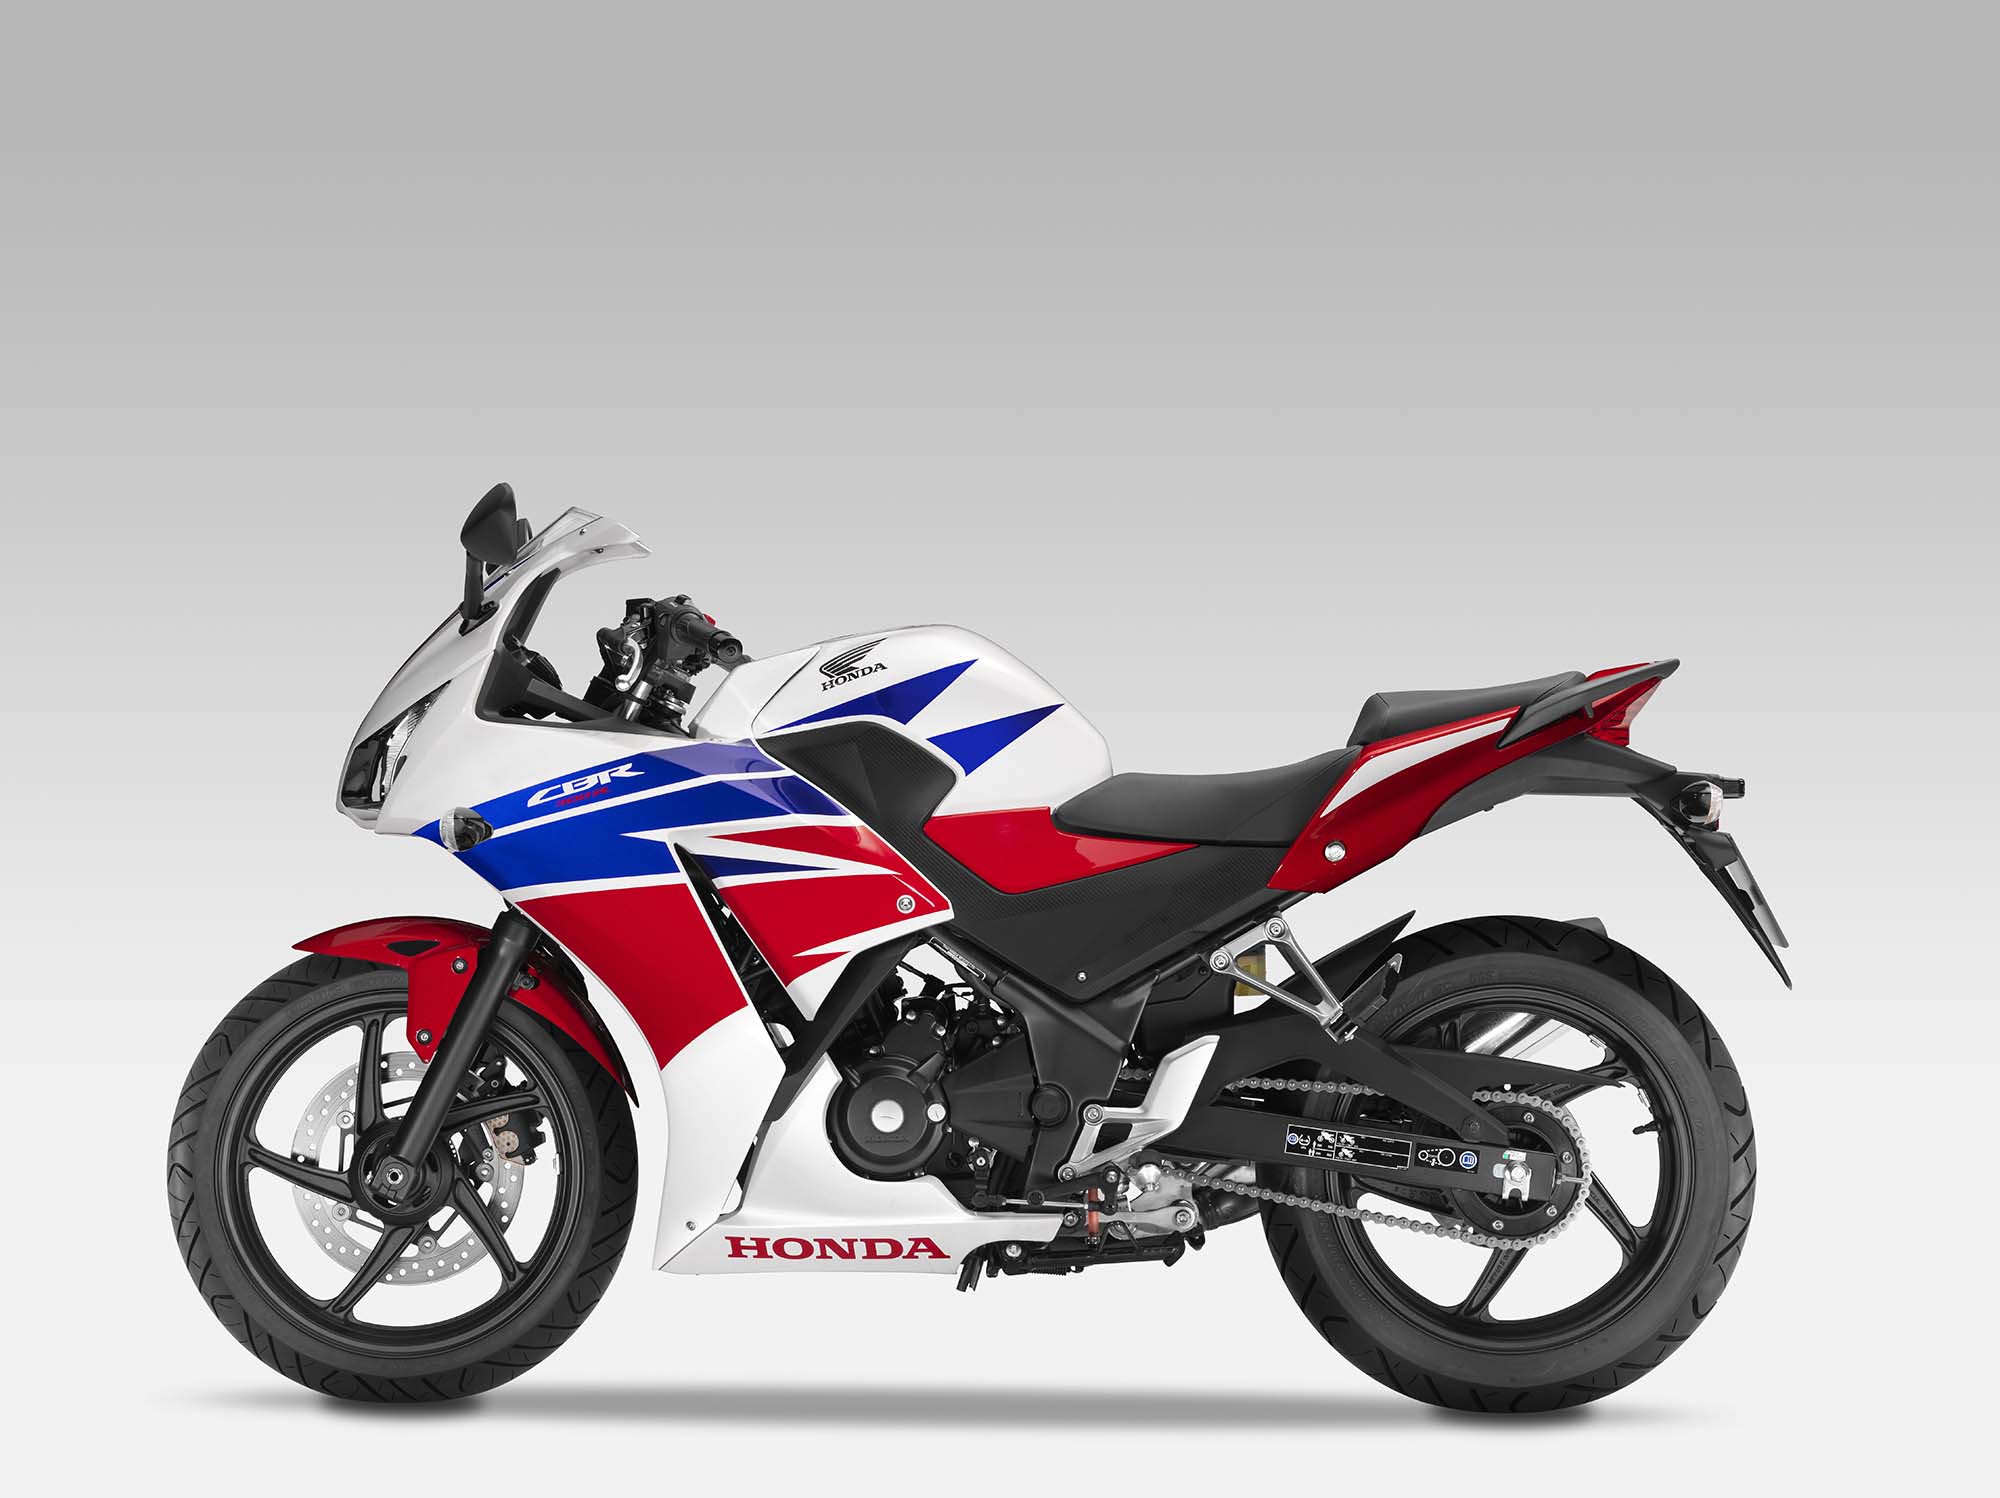 2014 Honda CBR300R is a CBR250R upgrade